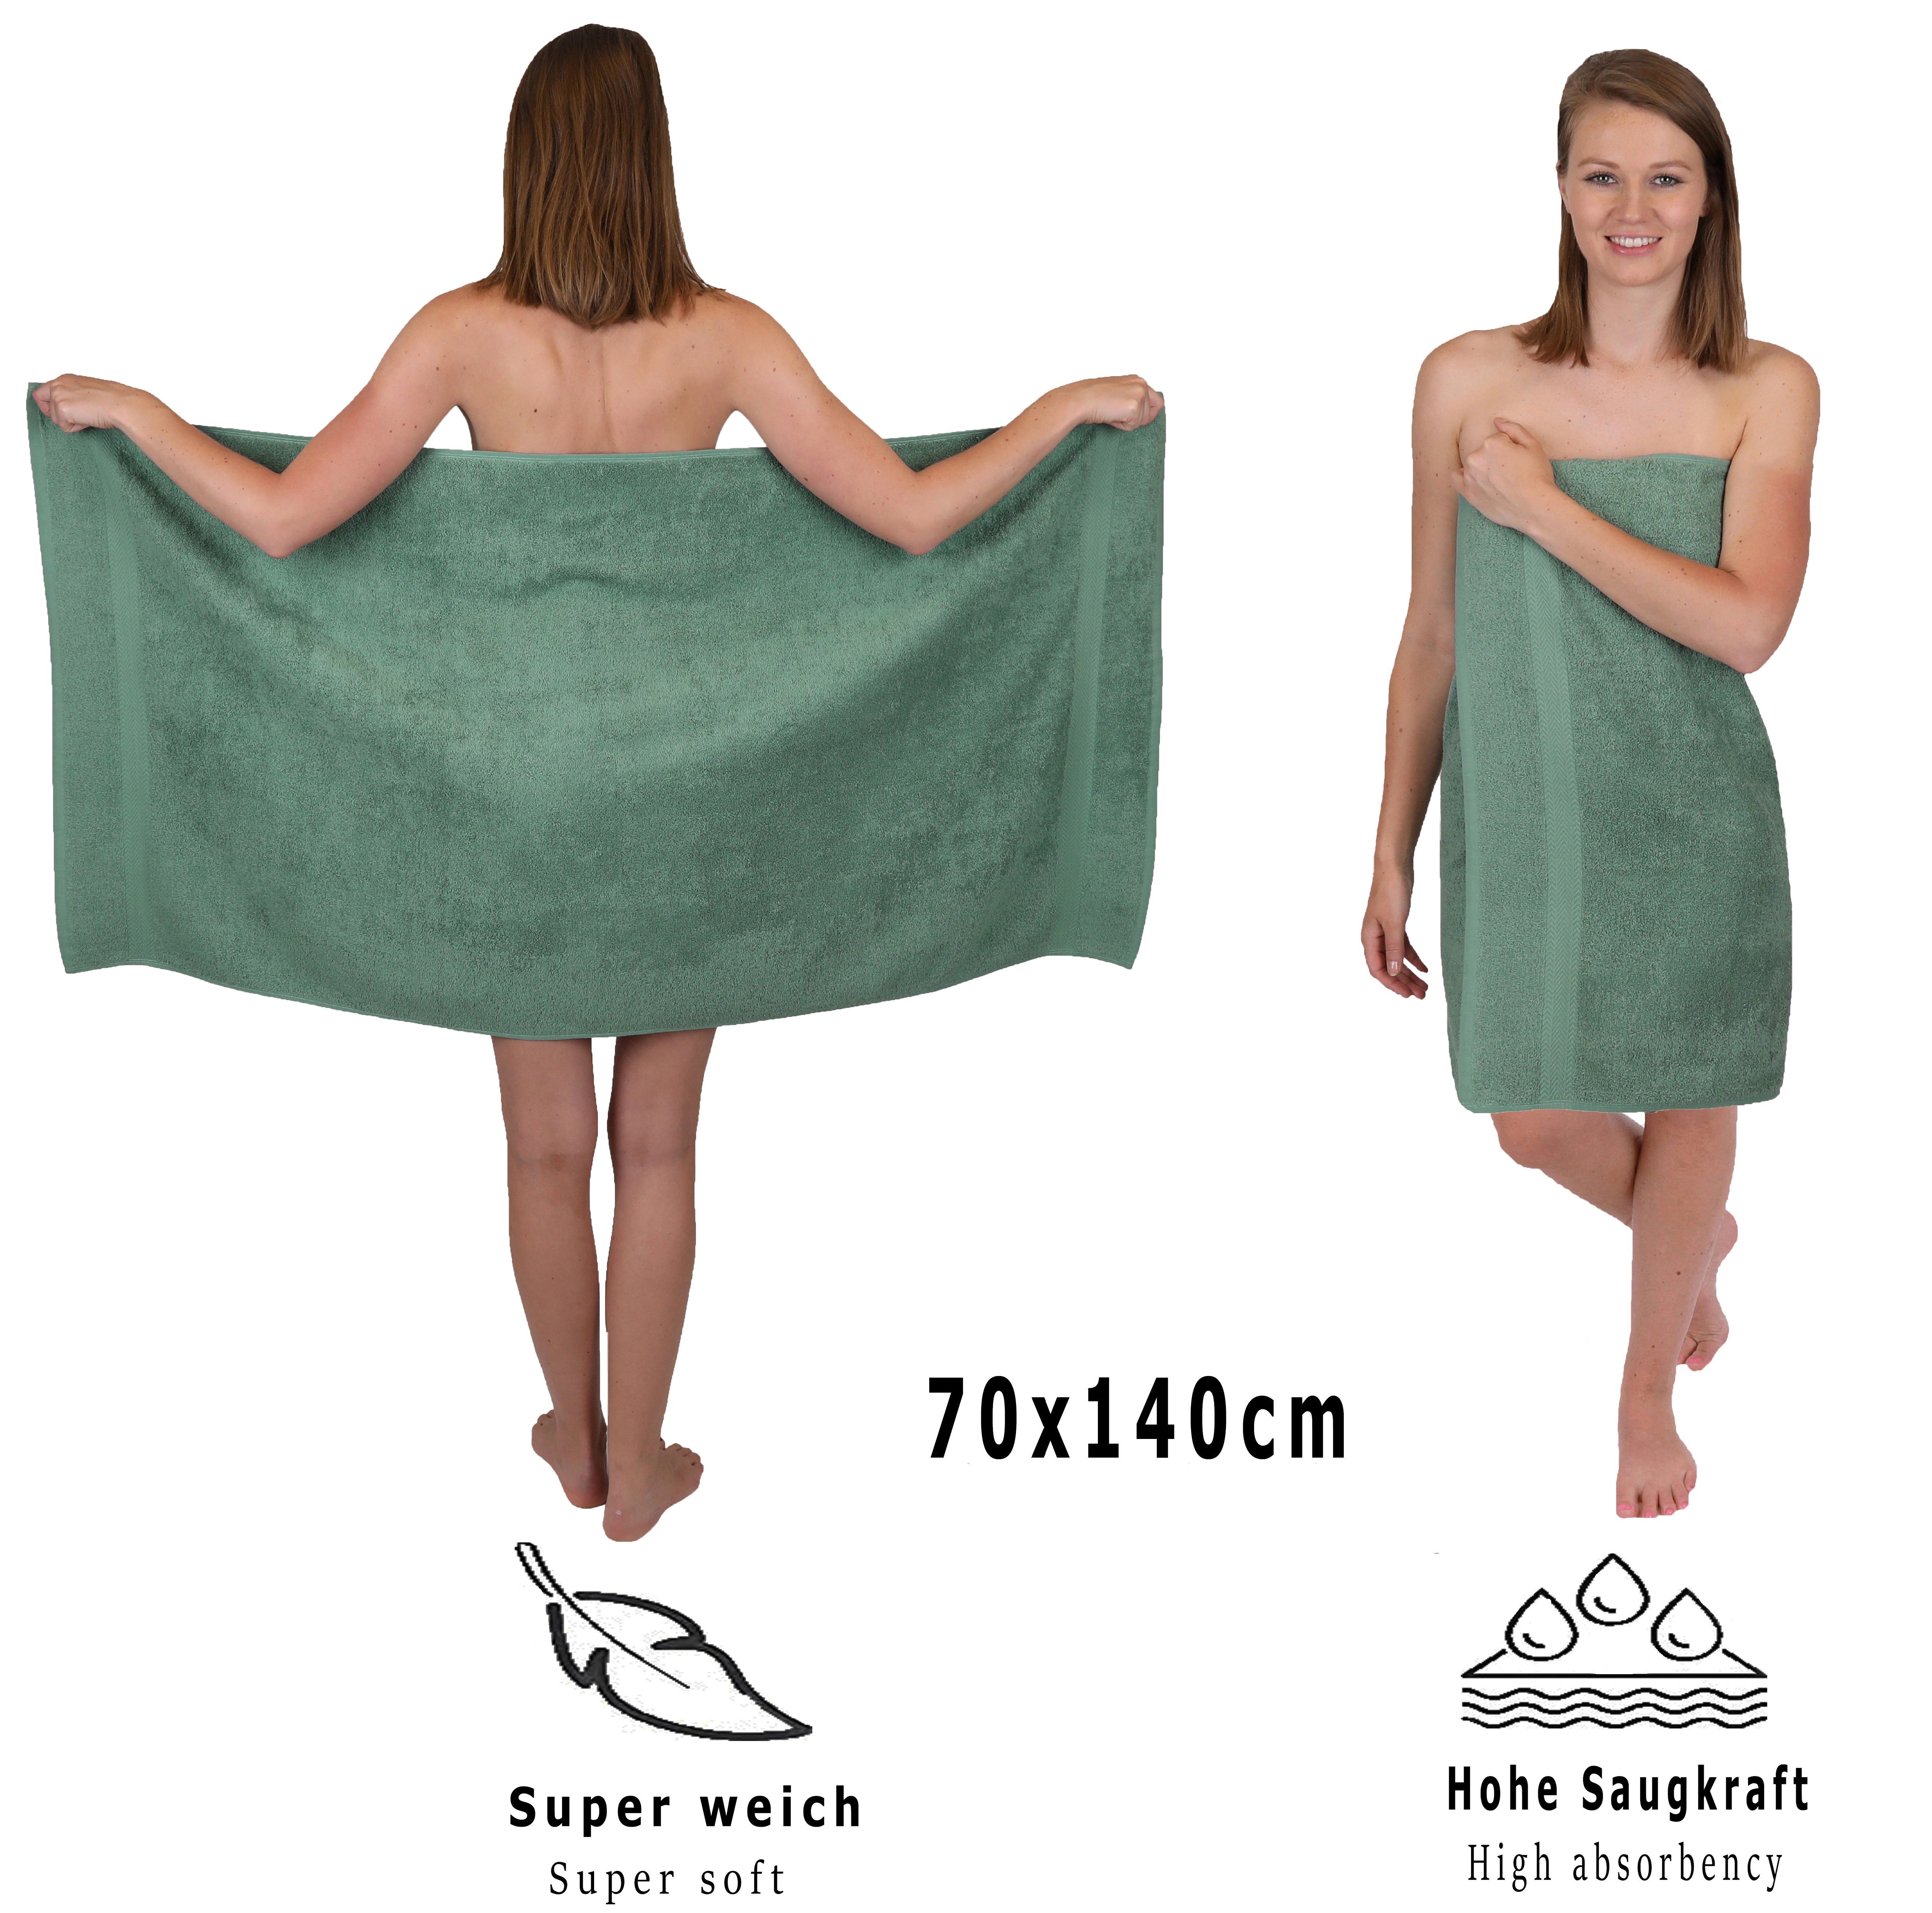 Betz (6-tlg) tannengrün Baumwolle, Handtuch-Set 100% Handtuch teiliges Set Handtücher-Set-100% PREMIUM -6 Baumwolle, Betz